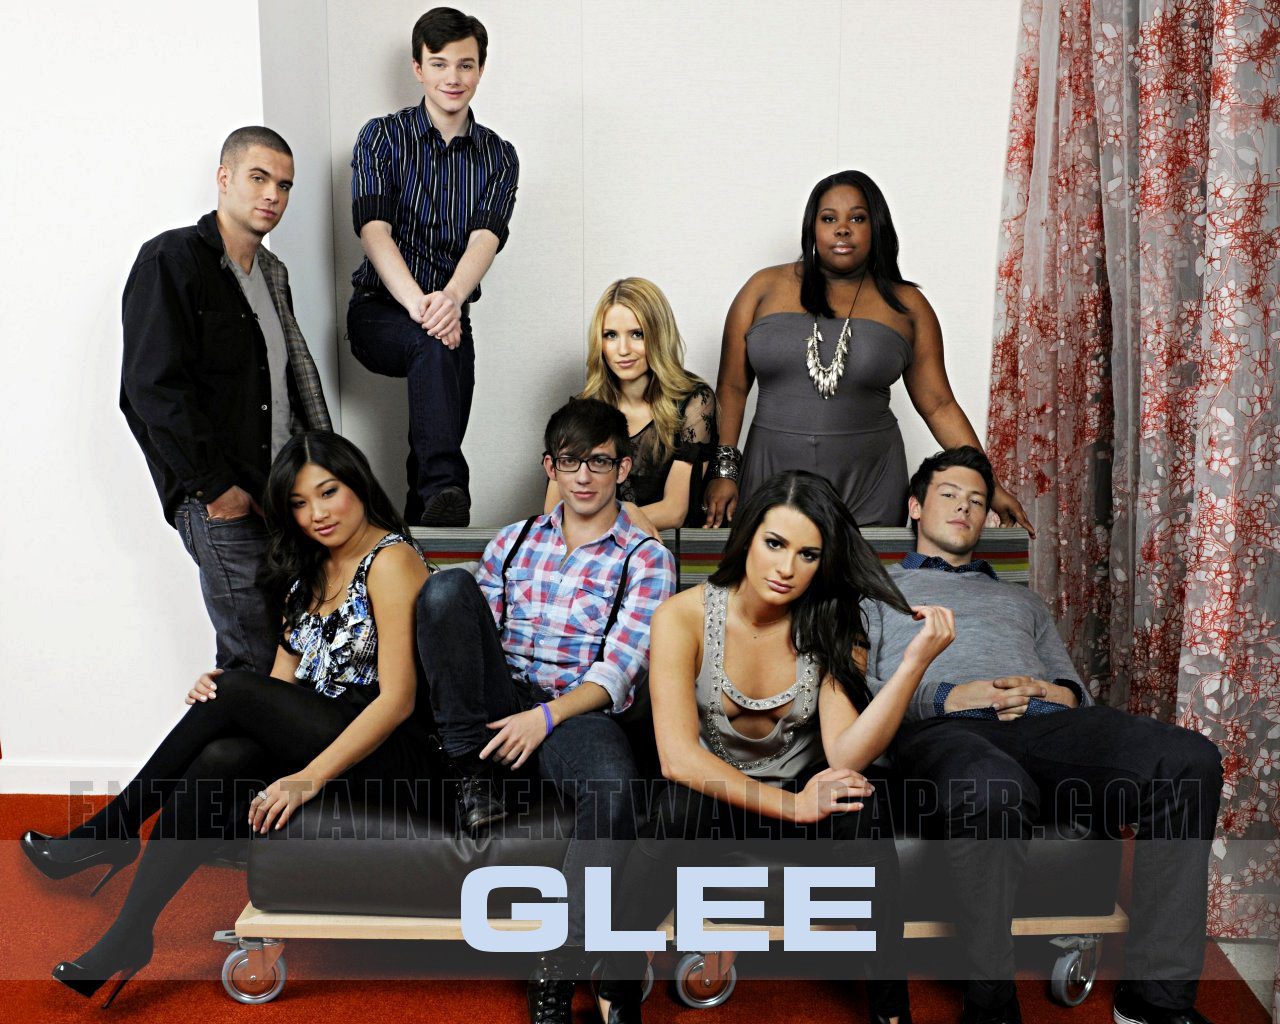 Glee Wallpaper Pictuers Photos Image Desktop